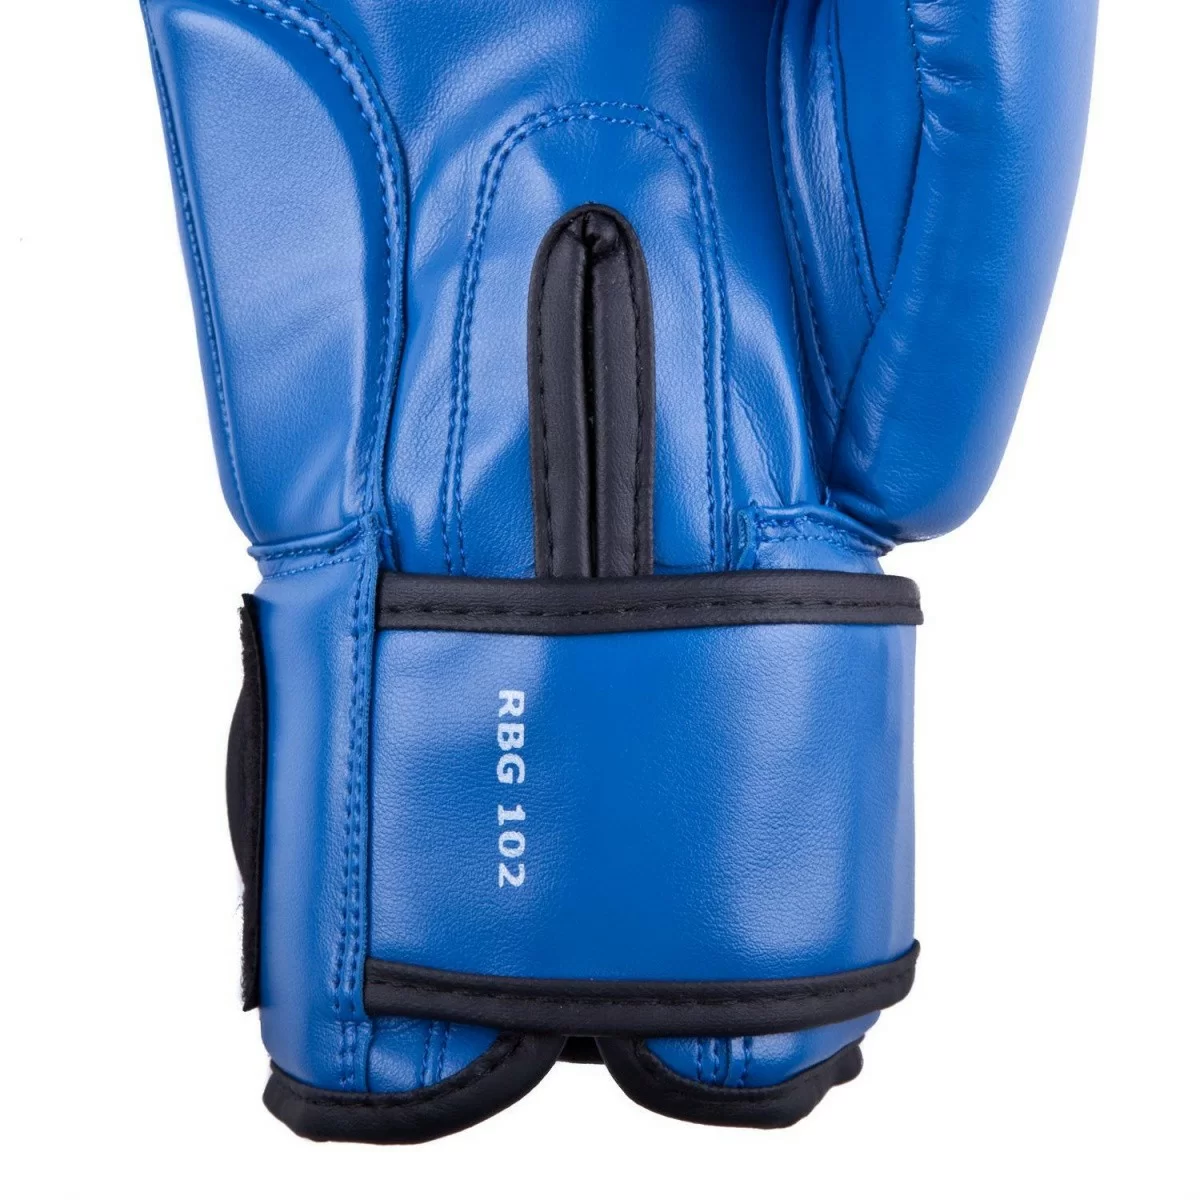 Реальное фото Перчатки боксерские Roomaif RBG-102 Кожа синий от магазина СпортЕВ